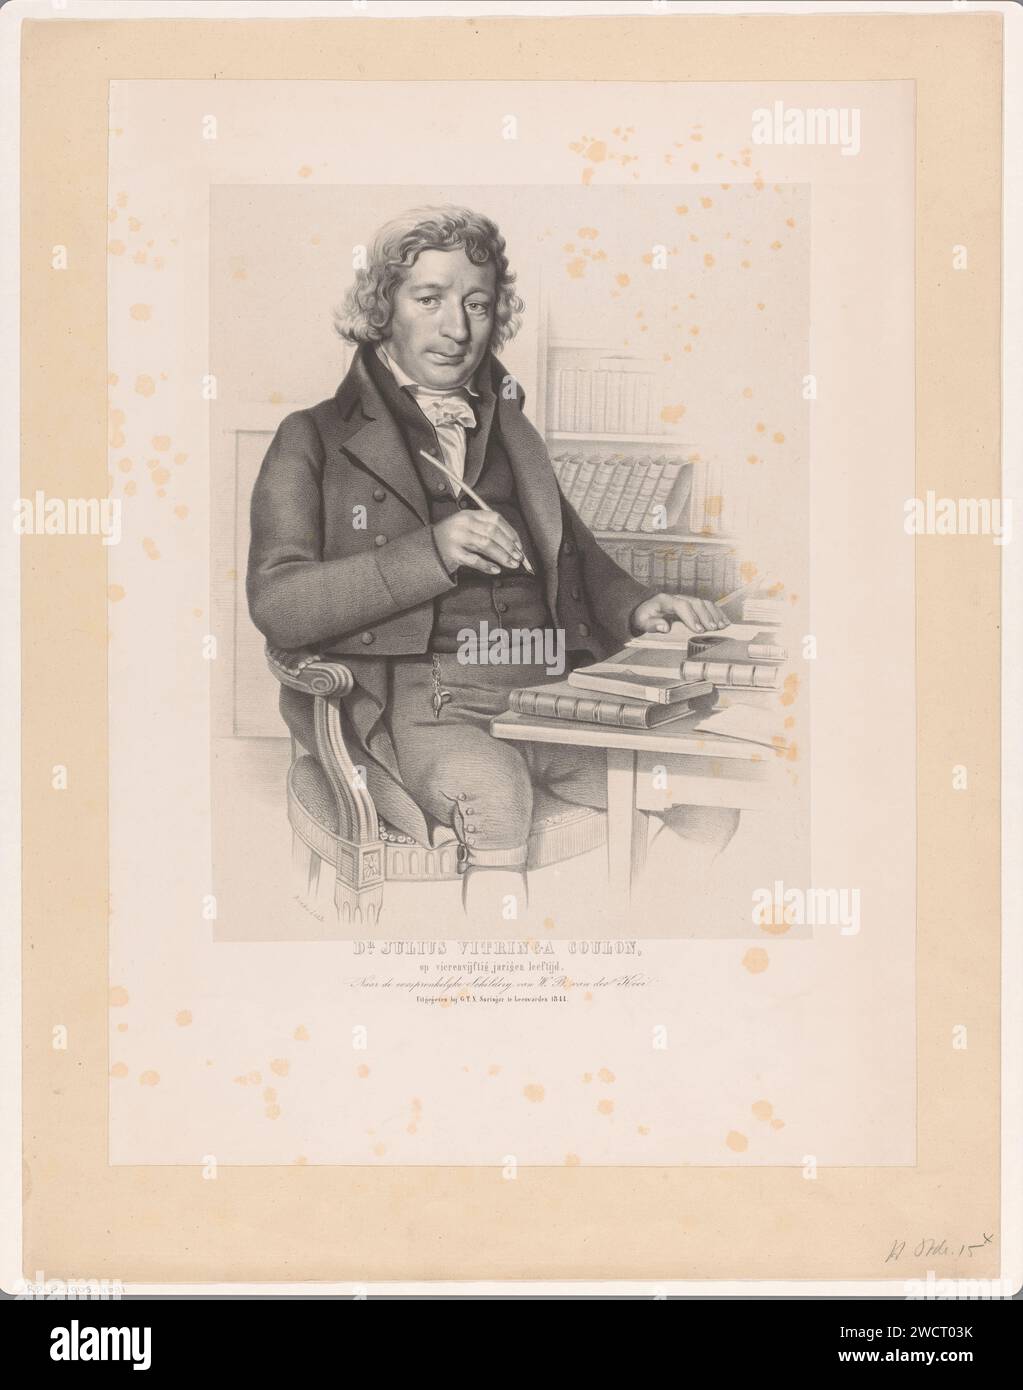 Porträt von Julius Vitringa Coulon, Johan George Lodewijk Rieke, nach Willem Bartel van der Kooi, 1844 Druck Leeuwarden Papier. Historische Personen Stockfoto